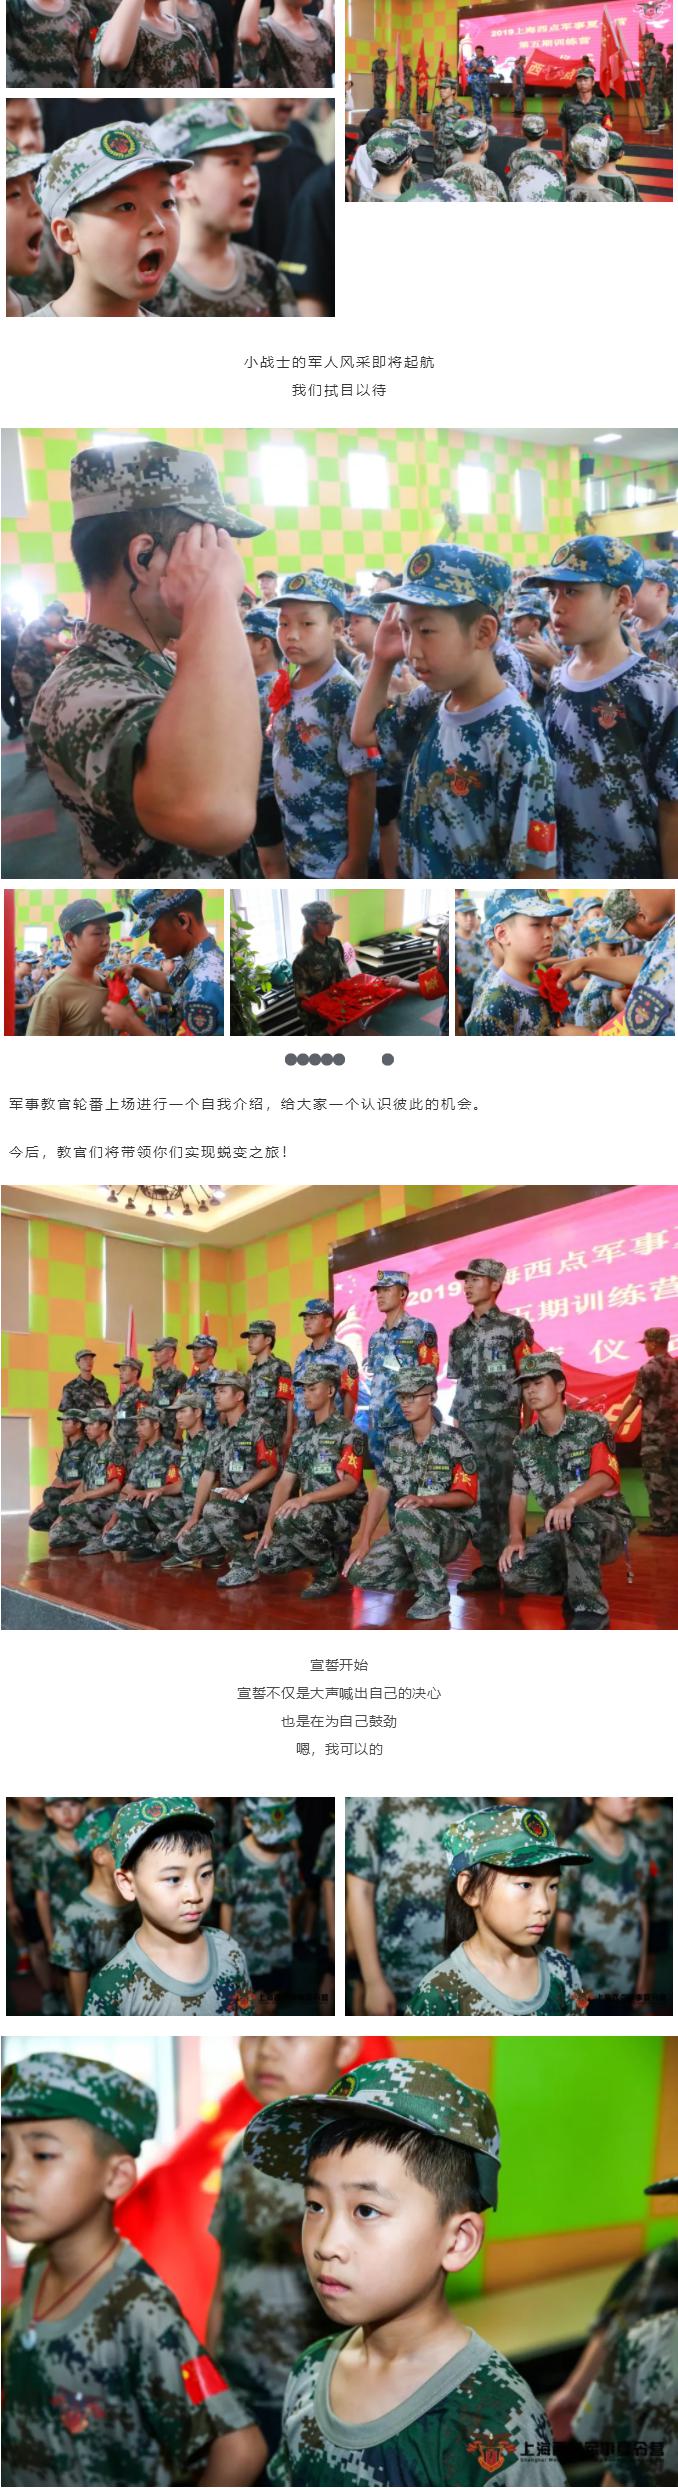 上海西点军事夏令营第四期开营现场